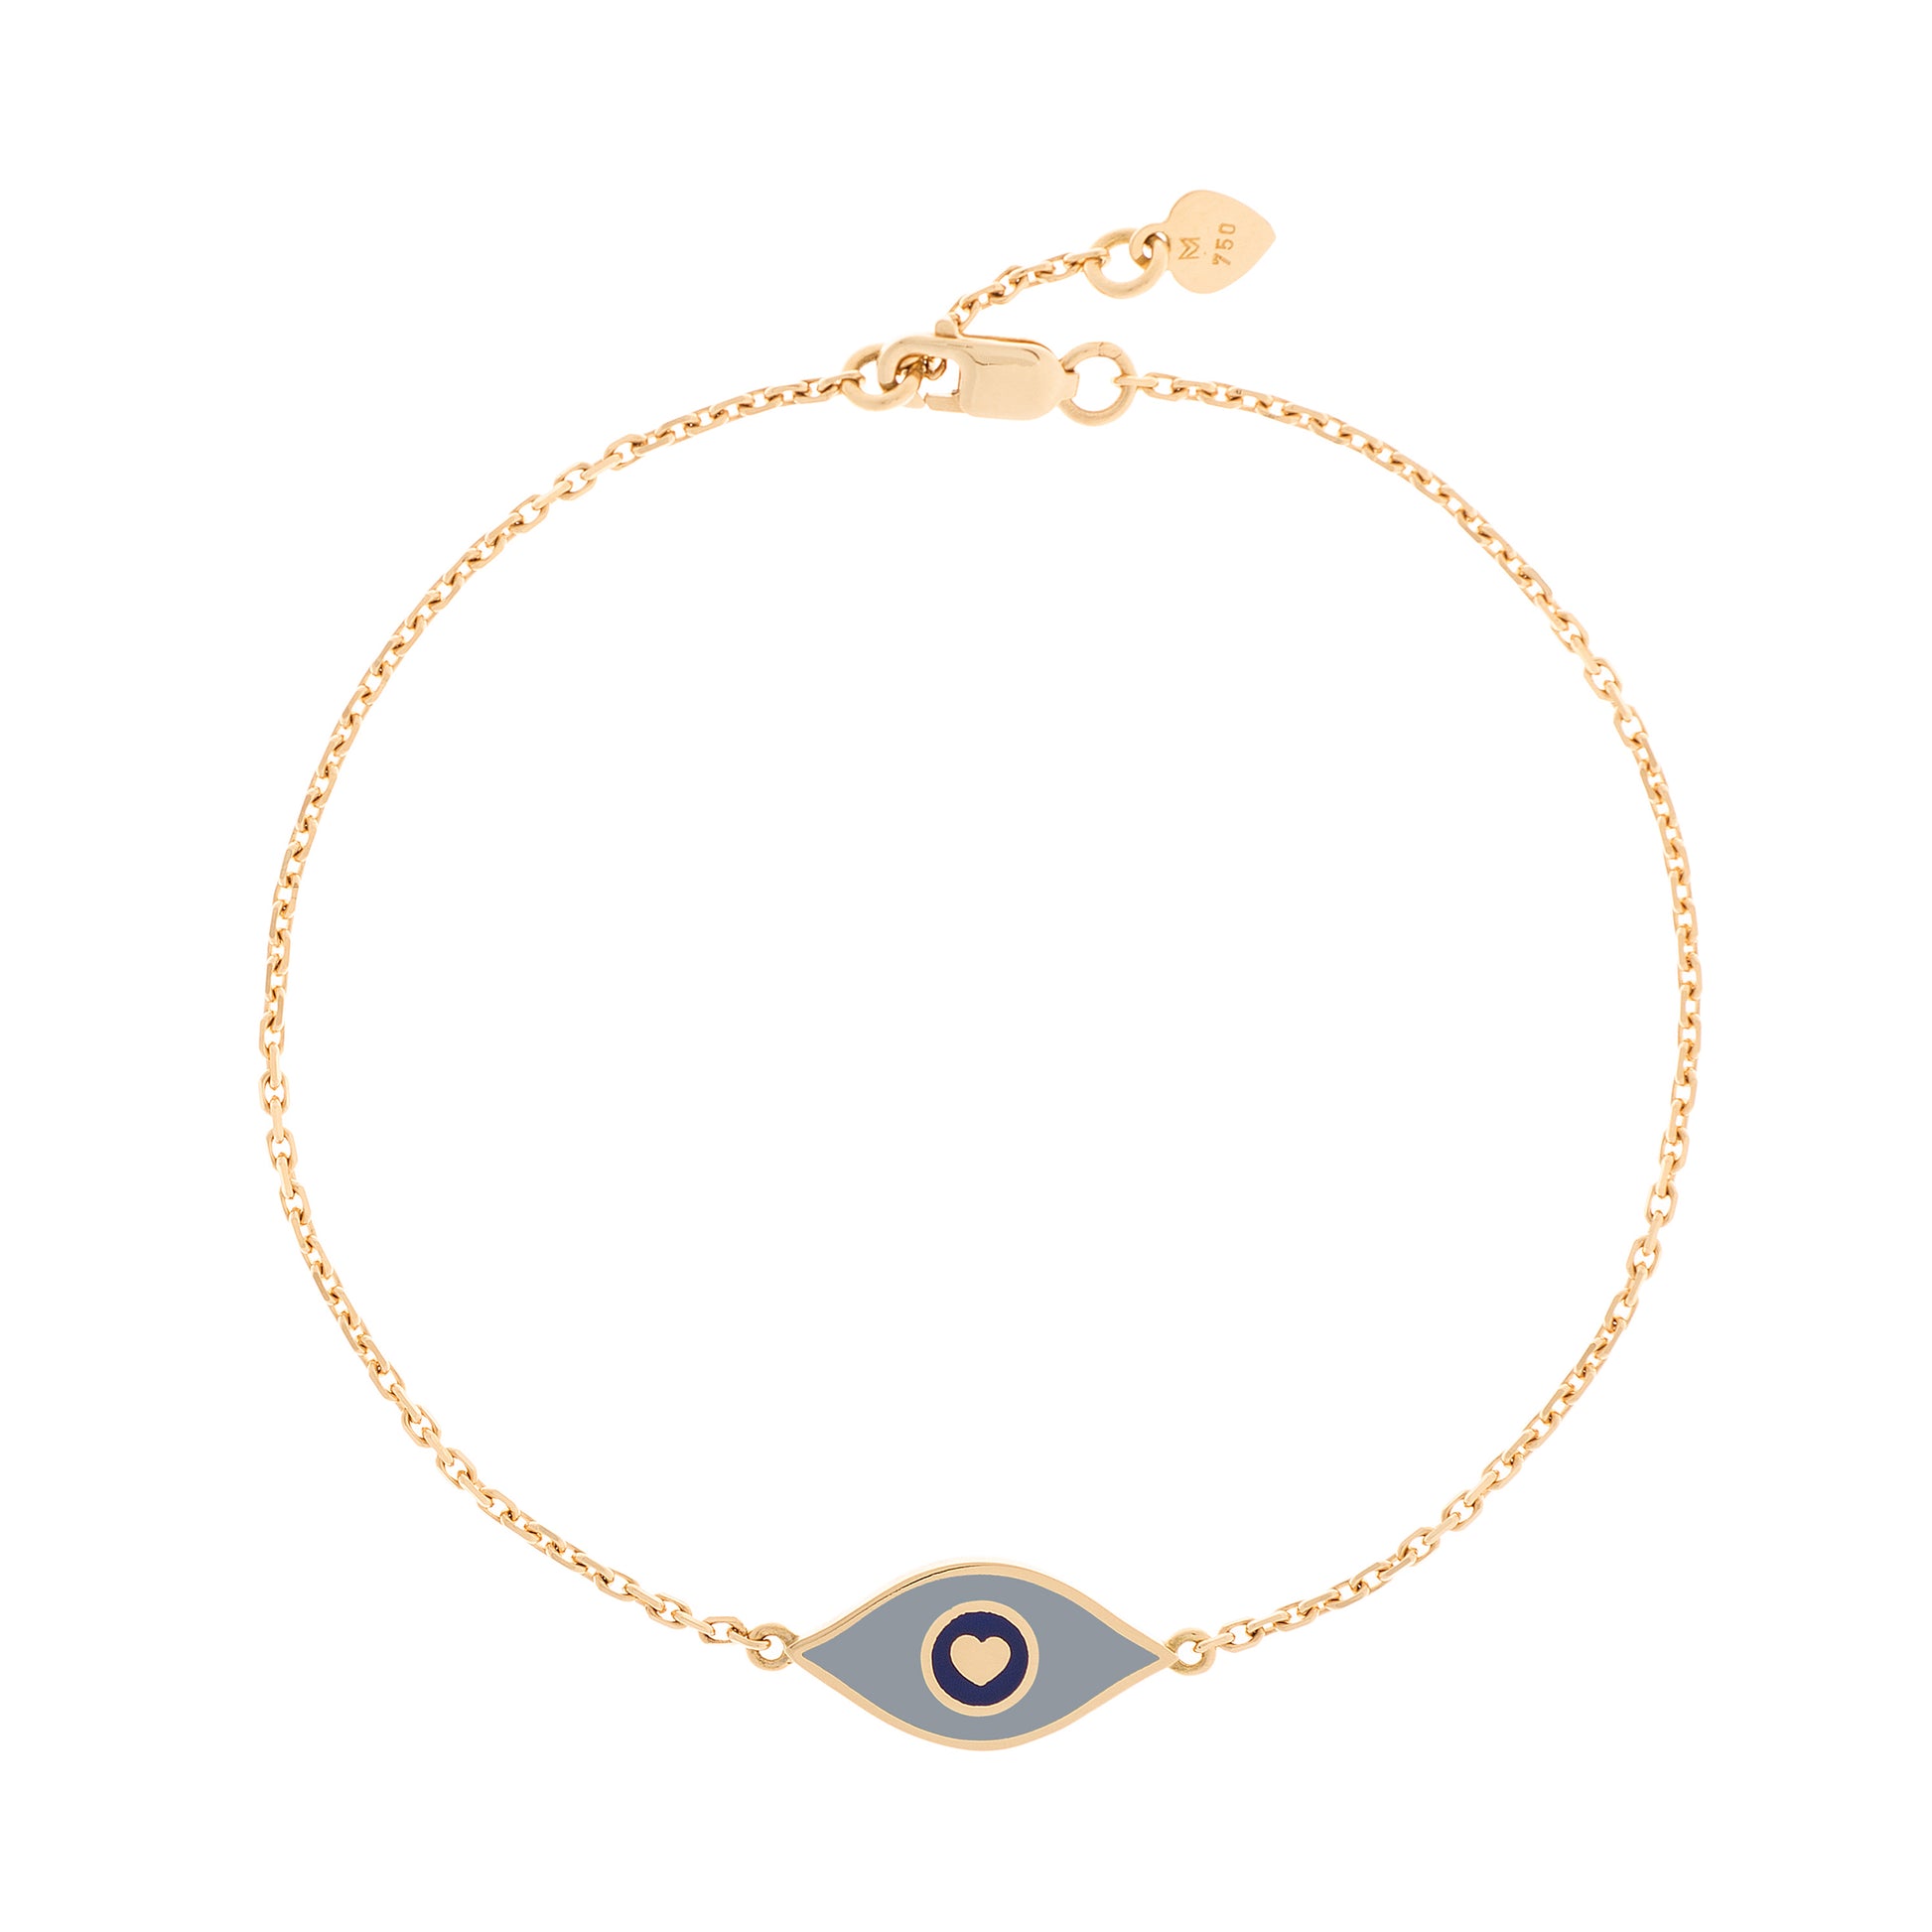 MORA bijoux, bracelet représentant un oeil émaillé gris en or jaune 18 carats monté sur une chaîne de 10mm d'épaisseur avec un petit coeur en or jaune 18 carats soudé sur le fermoir